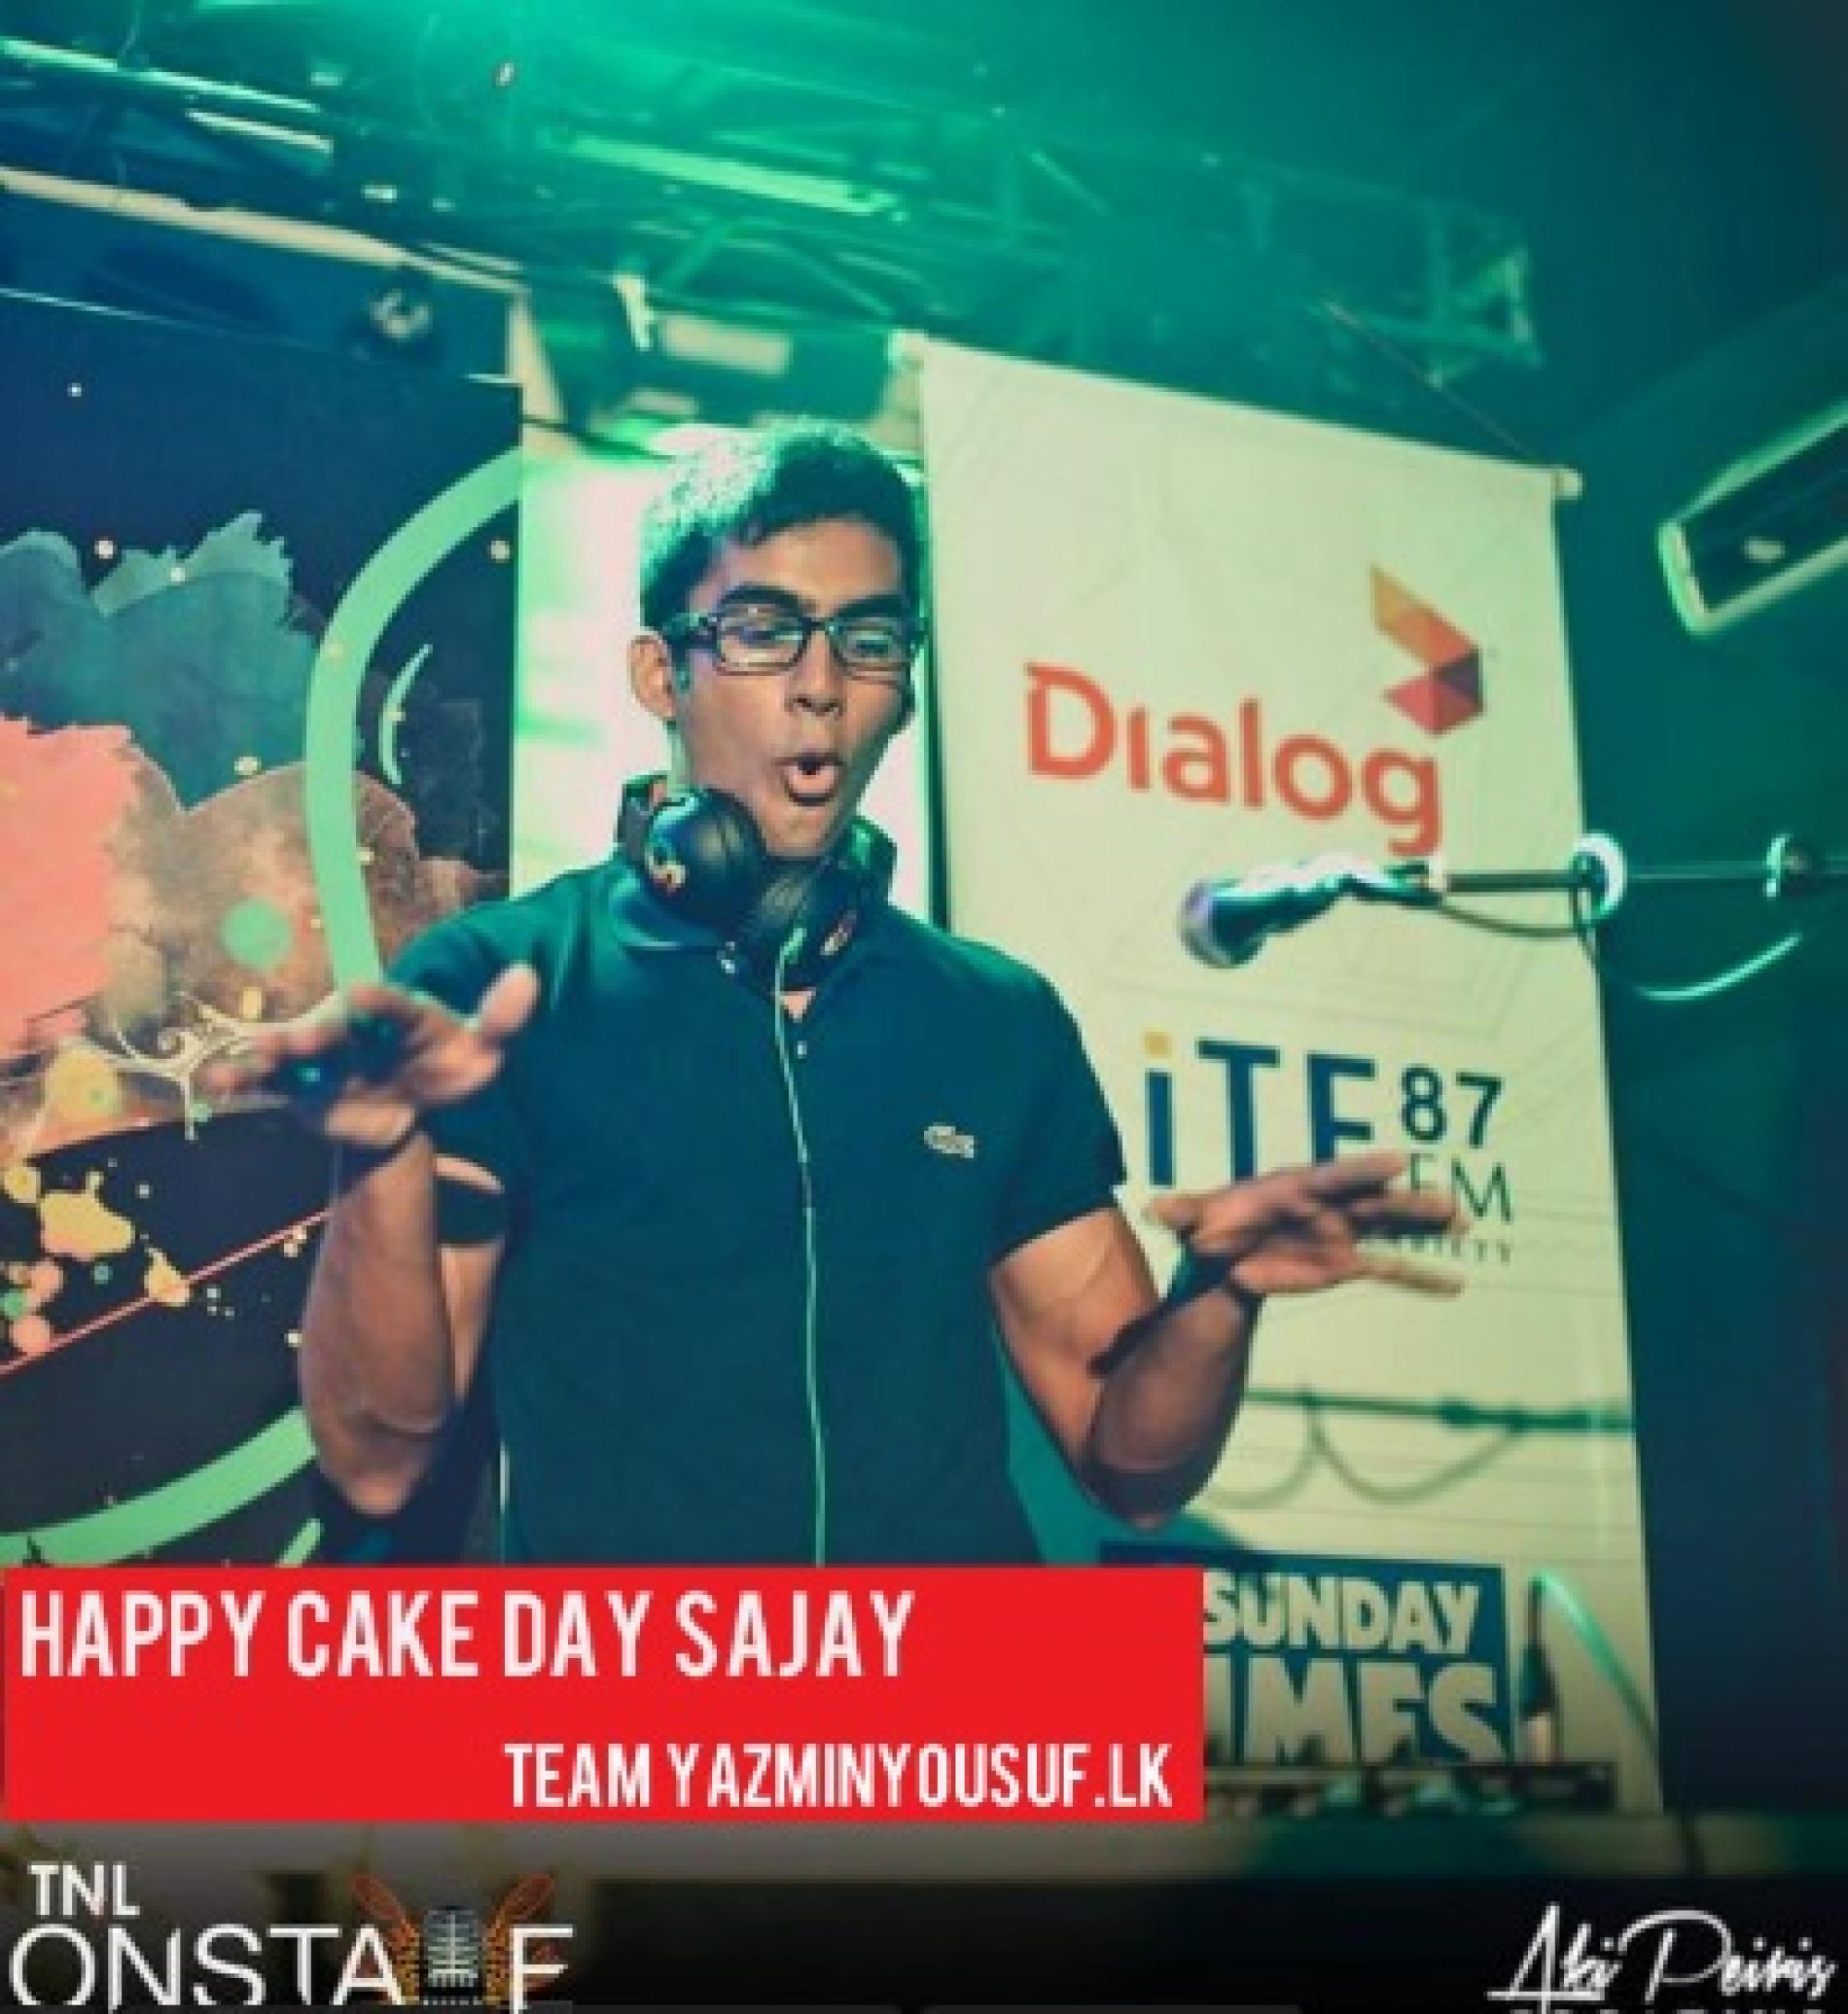 Happy Cake Day Sajay